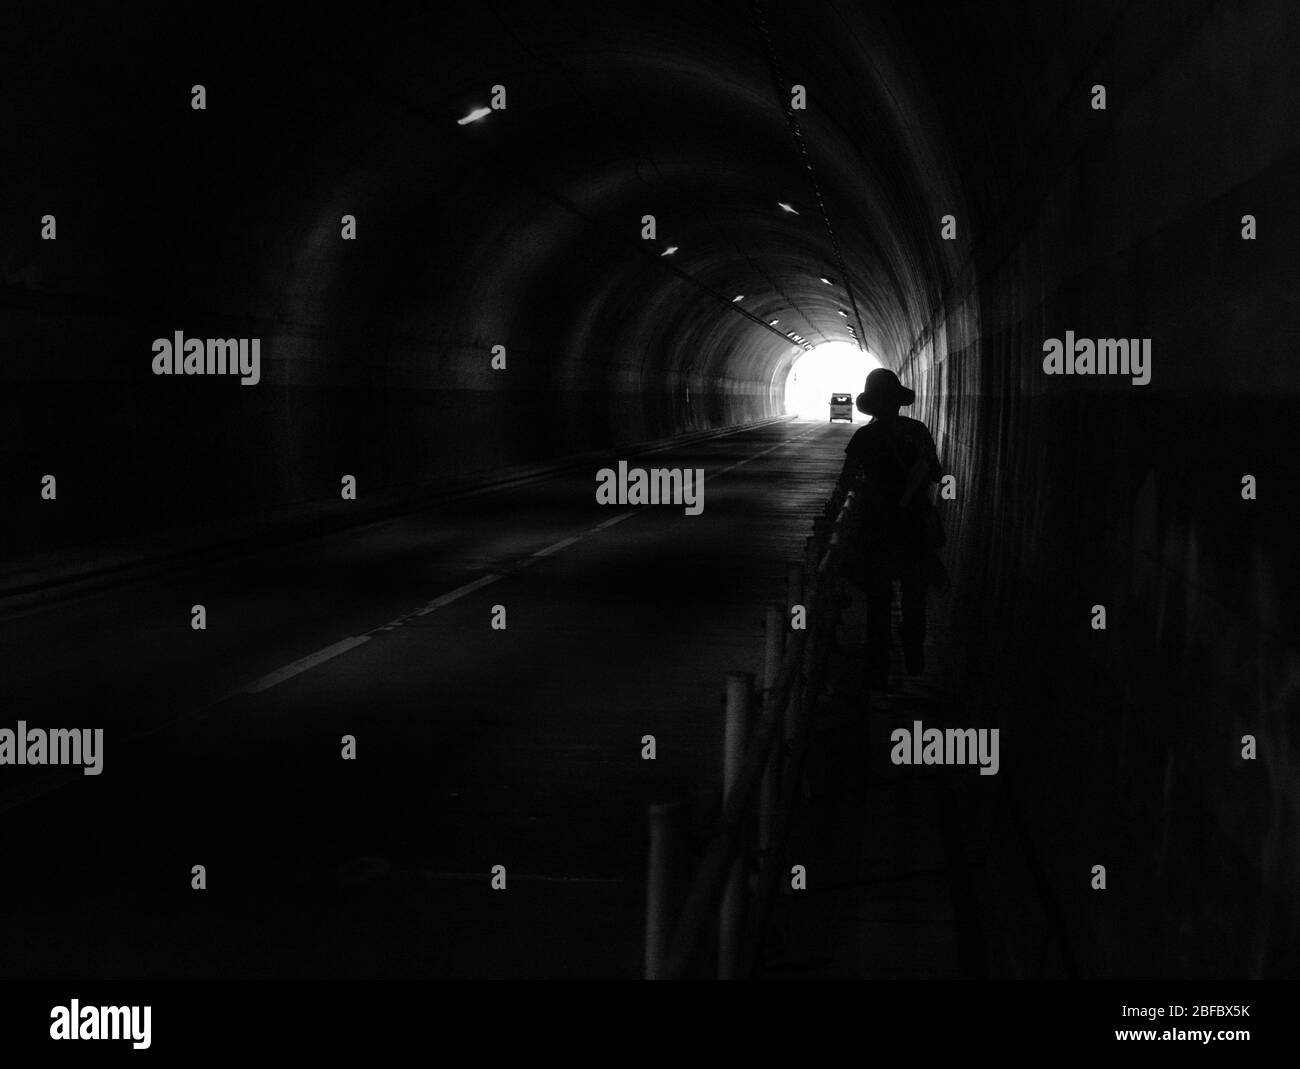 Silhouette umana e automobilistica nel tunnel scuro. Luce alla fine del tunnel. Foto Stock